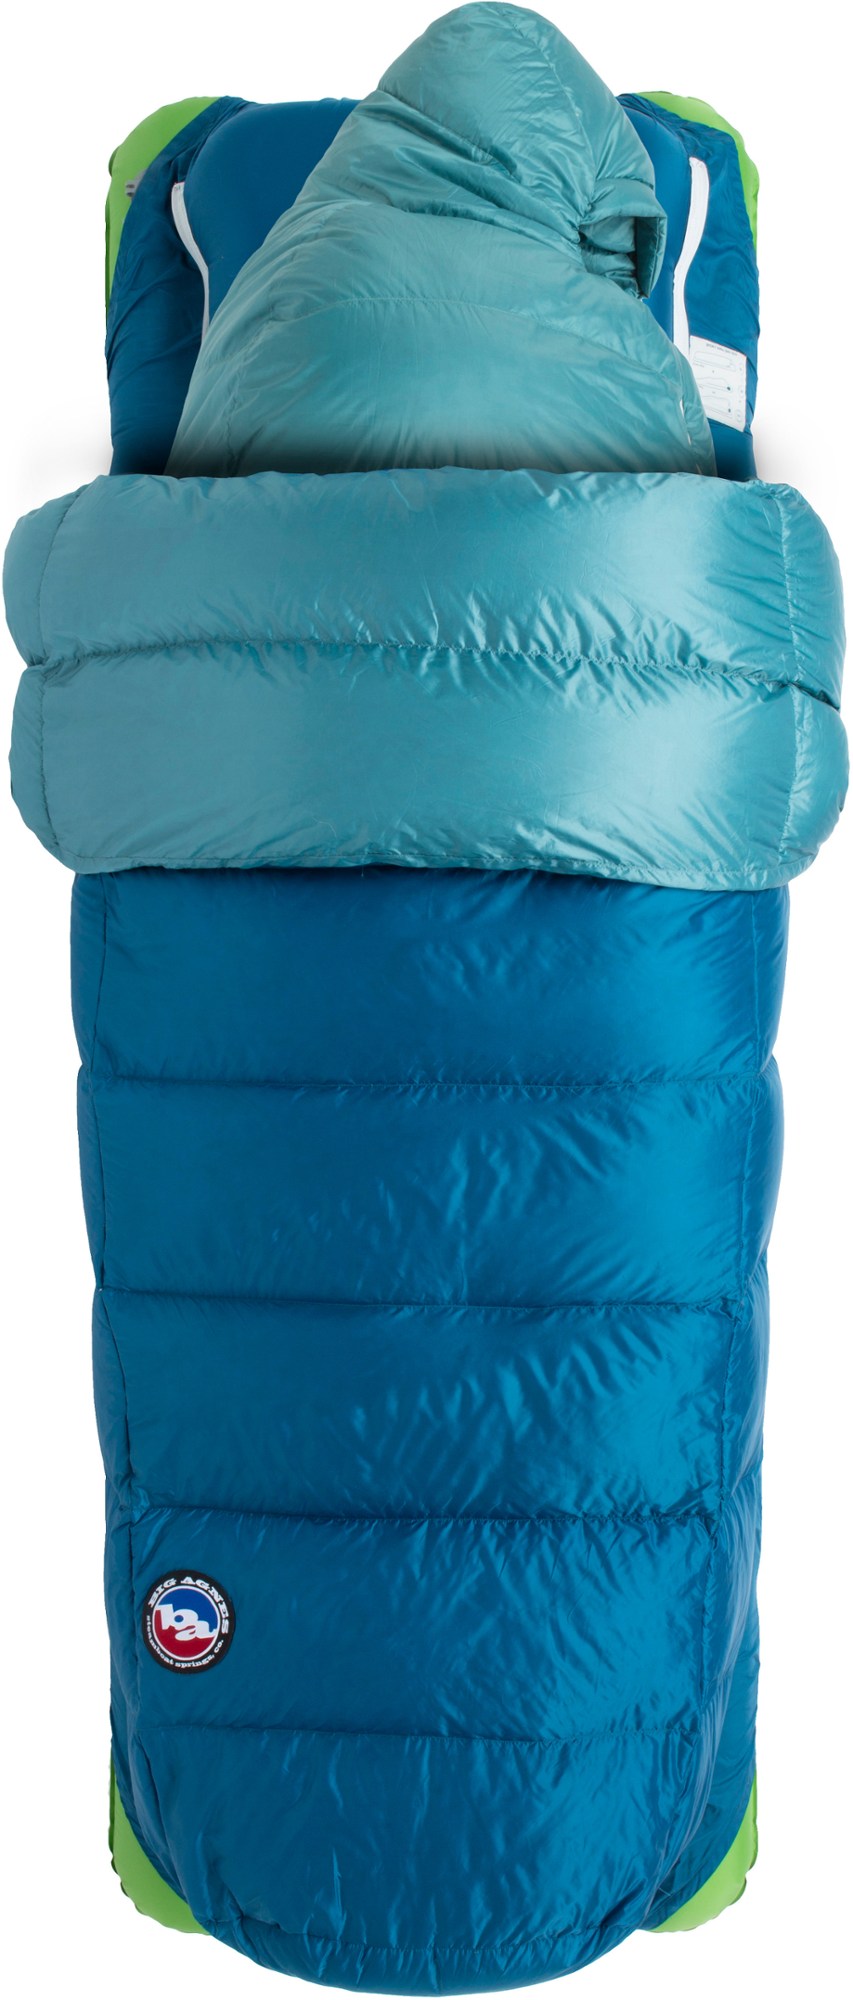 спальный мешок echo park 0 big agnes зеленый Спальный мешок Roxy Ann 3N1 15 - женский Big Agnes, синий